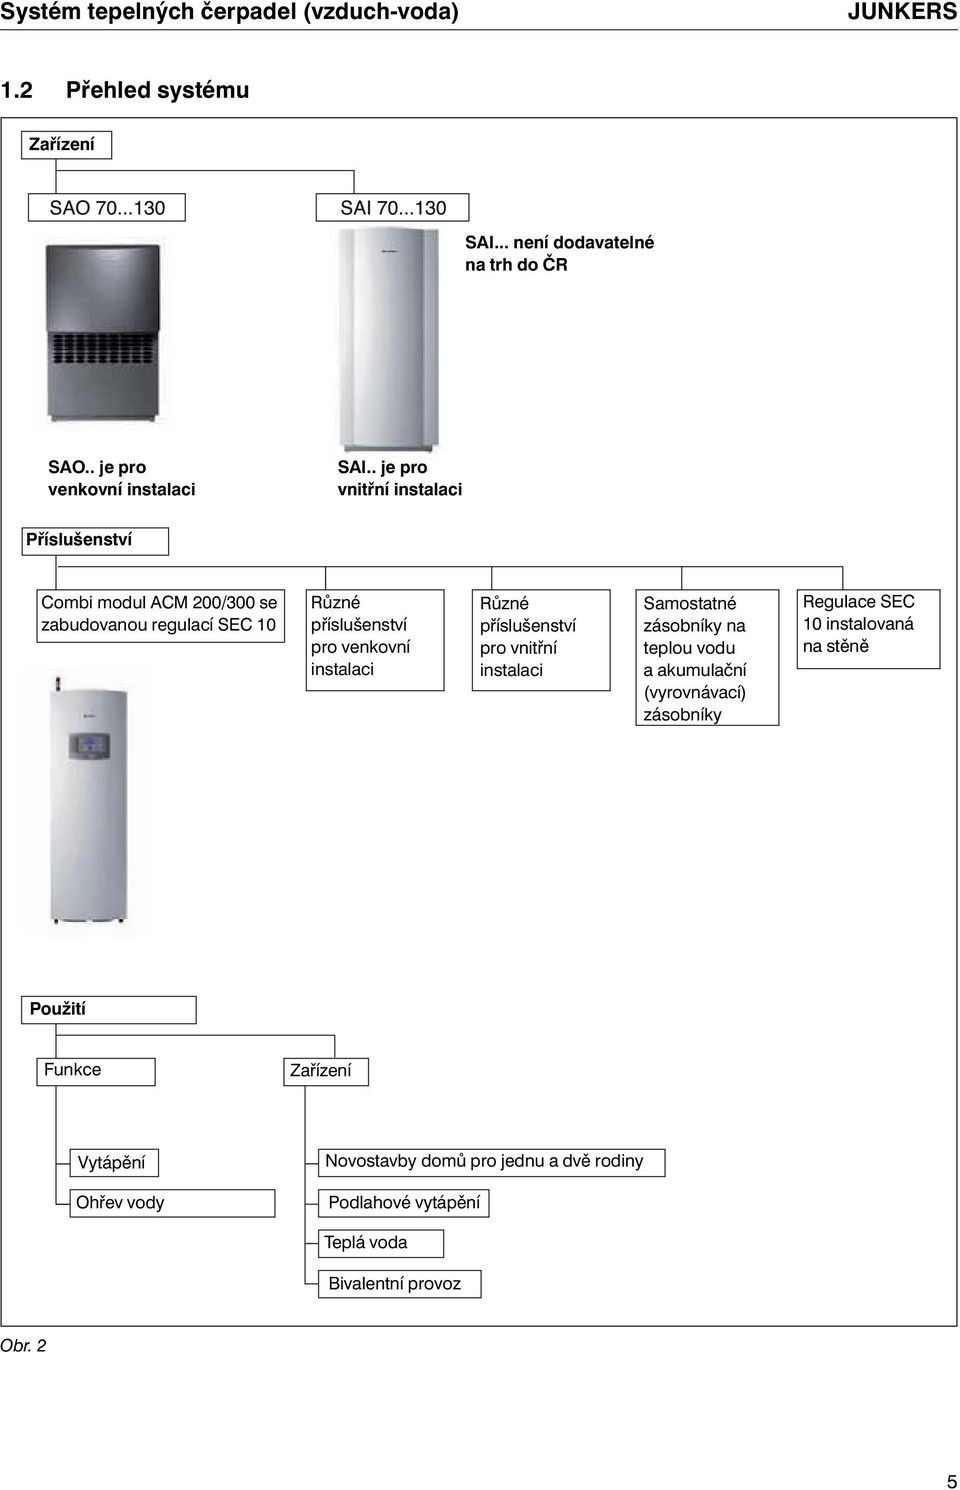 Různé příslušenství pro vnitřní instalaci Samostatné zásobníky na teplou vodu a akumulační (vyrovnávací) zásobníky Regulace SEC 10 instalovaná